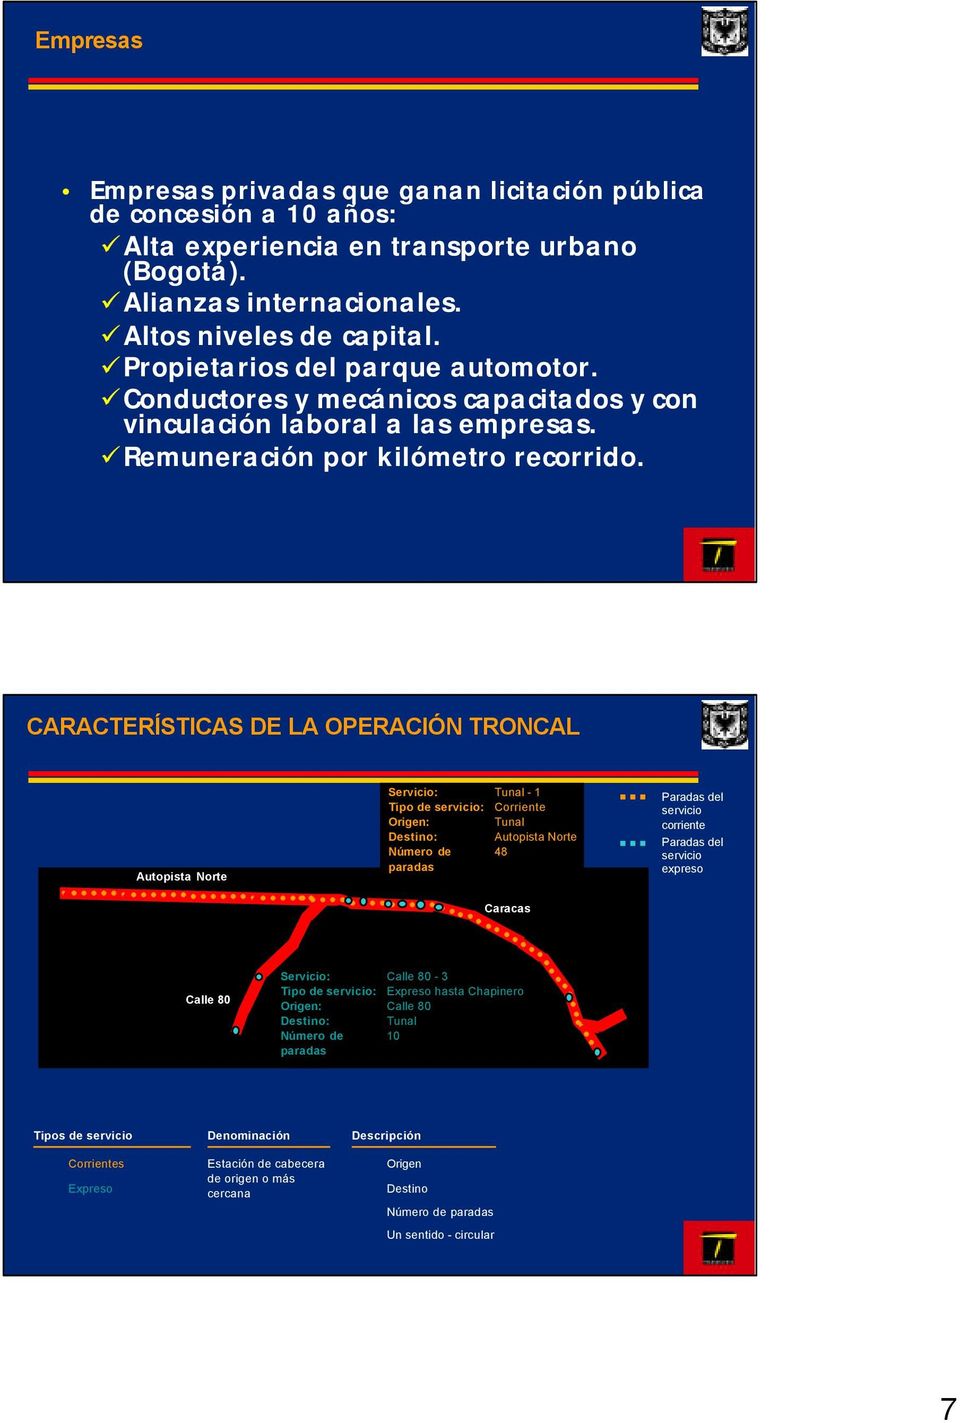 CARACTERÍSTICAS DE LA OPERACIÓN TRONCAL Autopista Norte Servicio: Tunal - 1 Tipo de servicio: Corriente Origen: Tunal Destino: Autopista Norte Número de 48 paradas Caracas Paradas del servicio